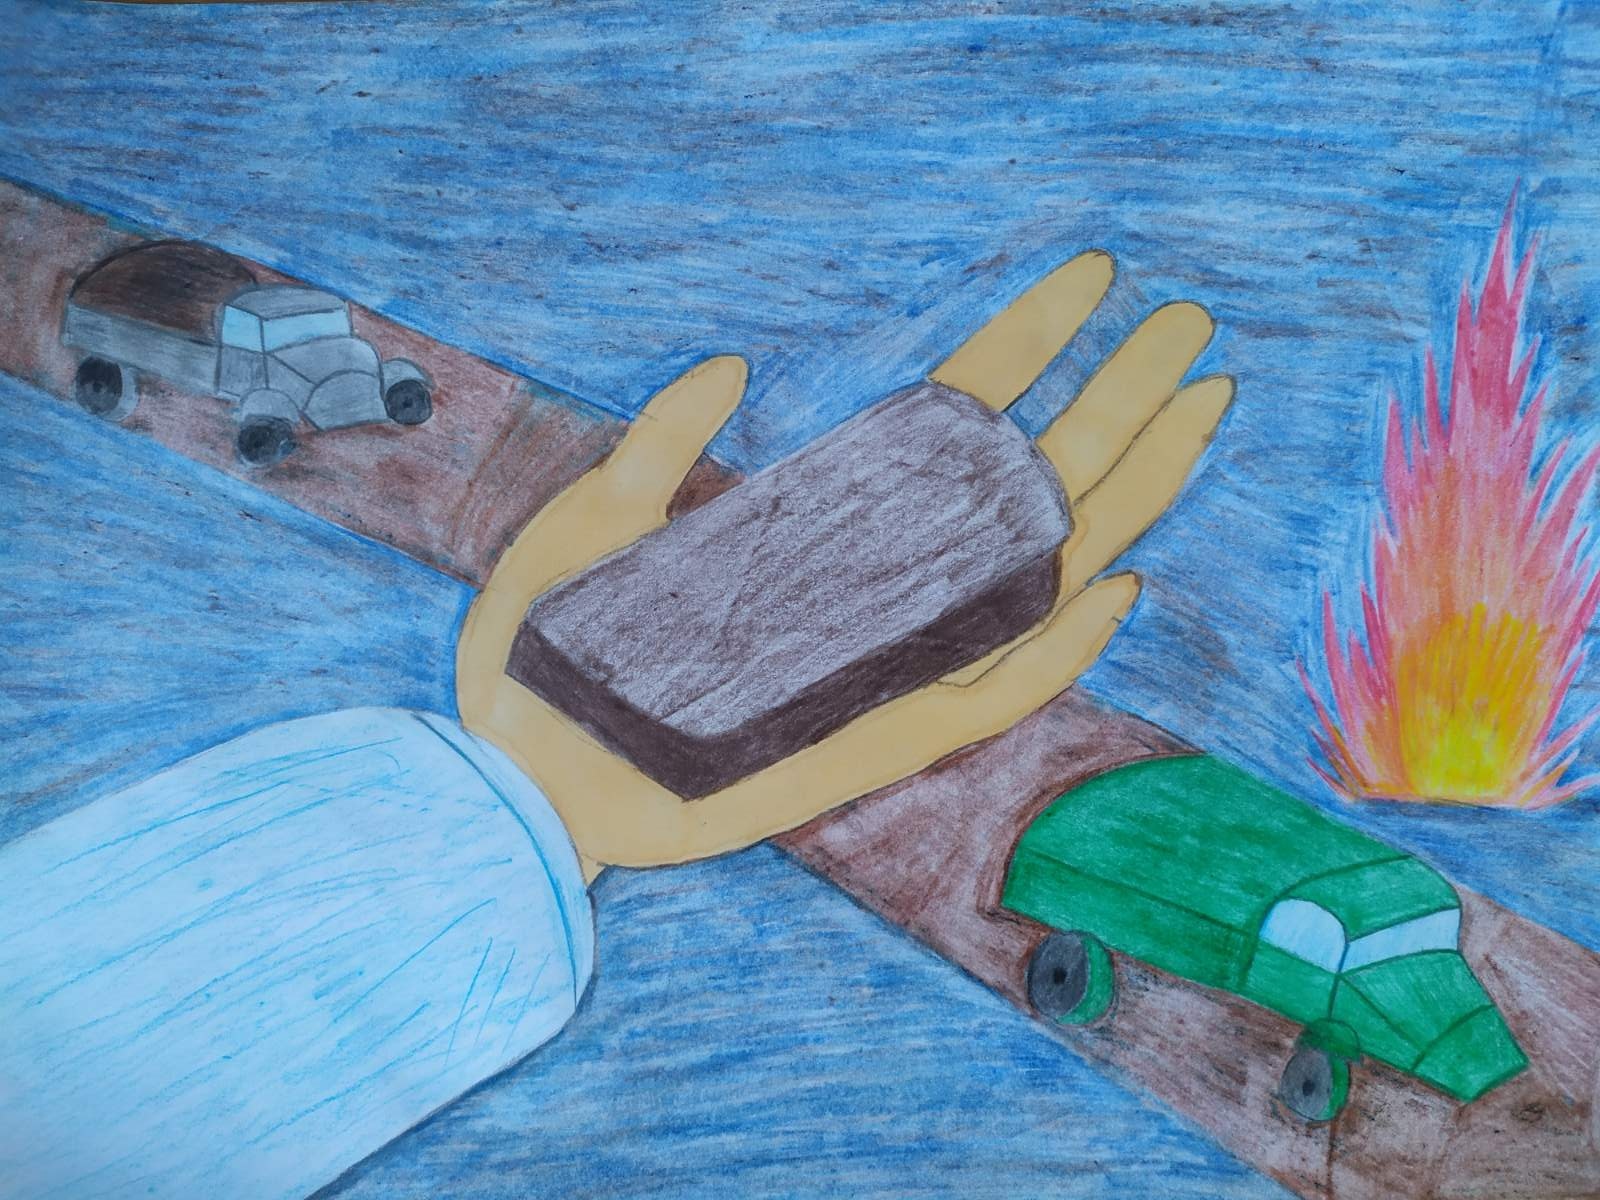 Блокада ленинграда рисунок детский сад